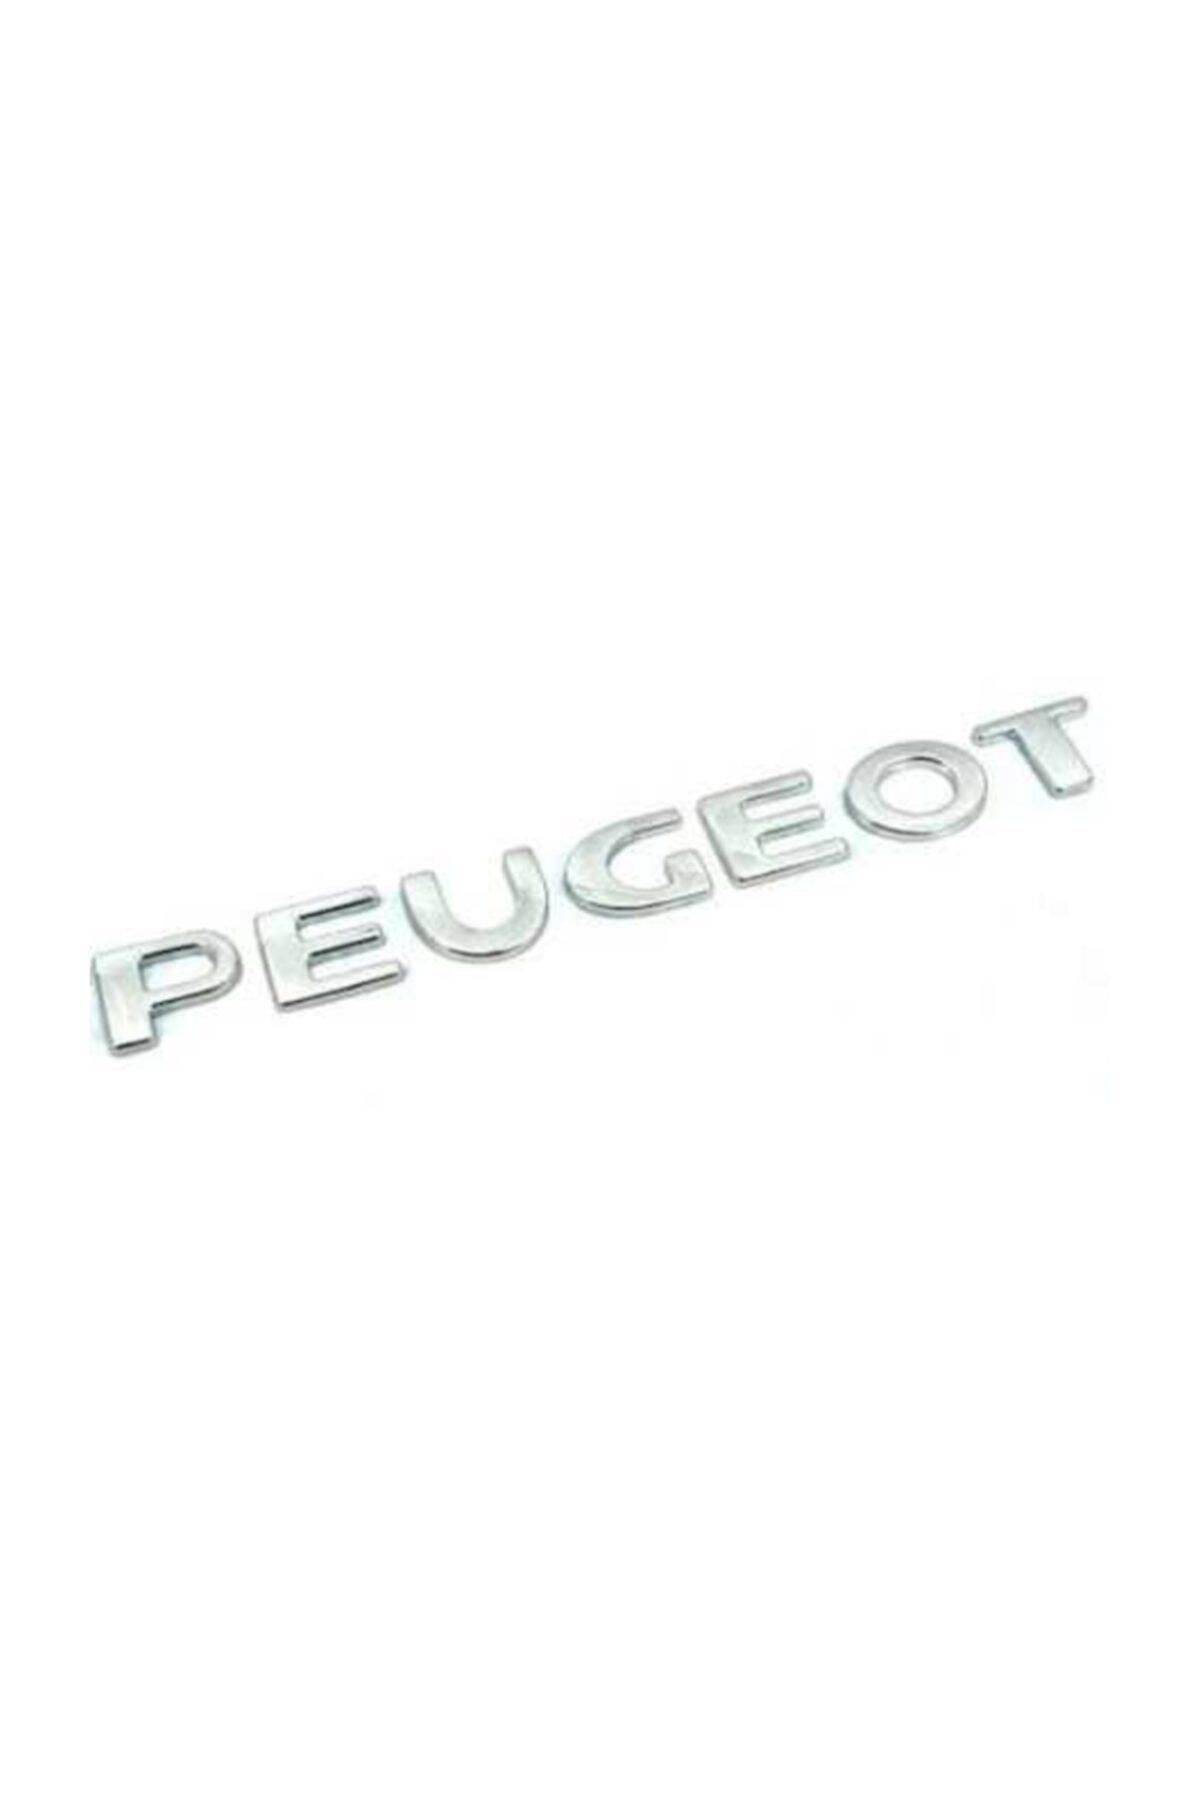 EDEXPORT Peugeot 307 Bagaj Kaputu Peugeot-307-aslan Arma Yazı Seti